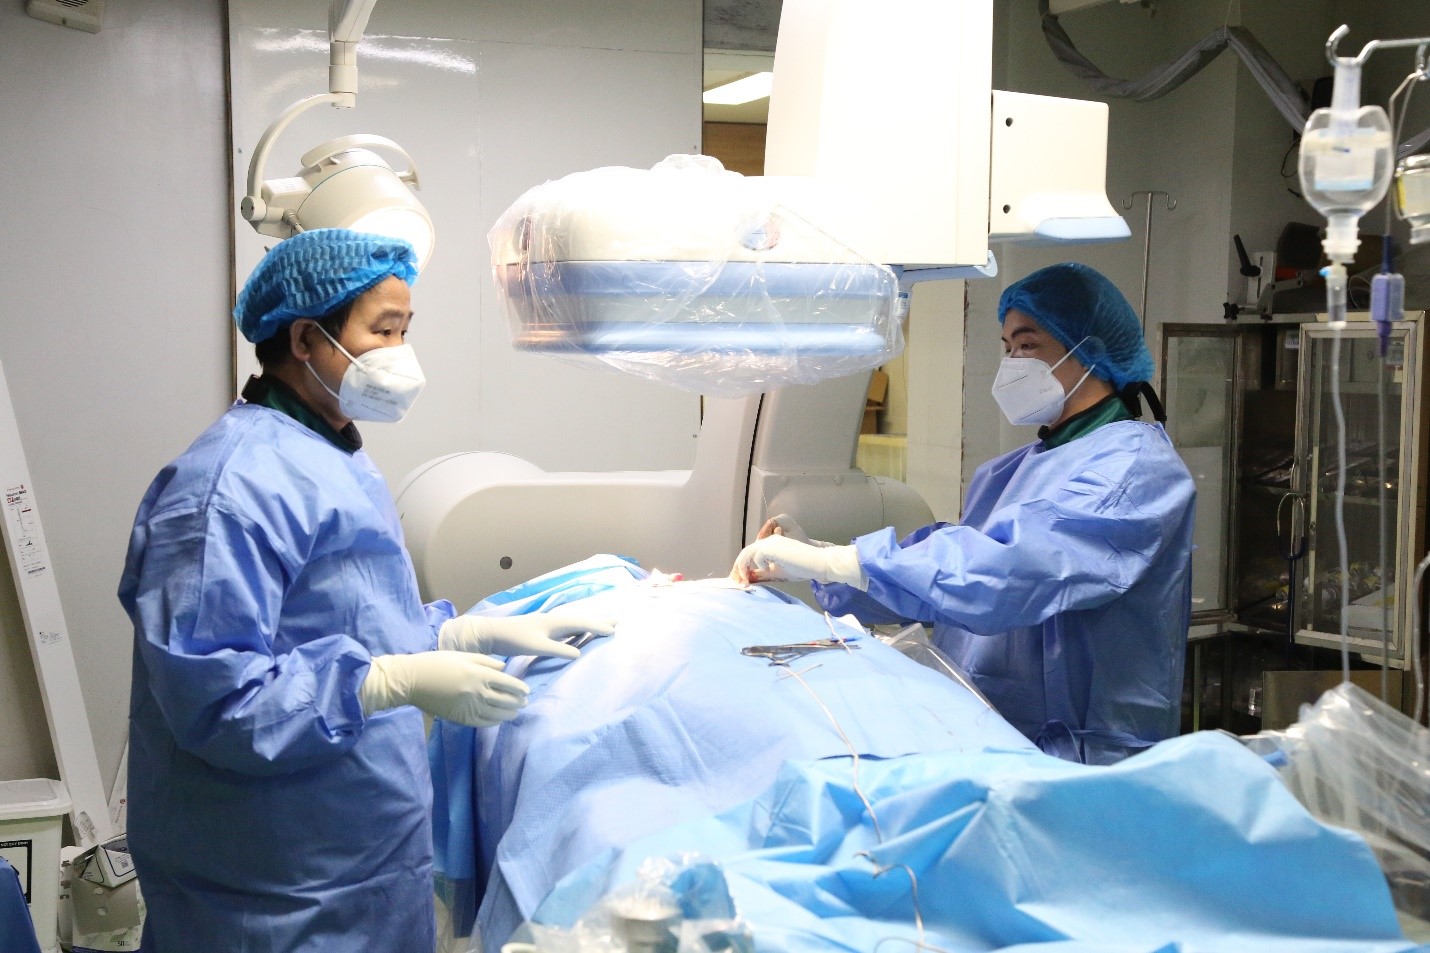 Bác sĩ Nội trú, Bác sĩ chuyên khoa II Nguyễn Đình Việt (bên phải), Trưởng khoa Nội Tim mạch đang thực hiện can thiệp điều chỉnh rối loạn nhịp tim cho người bệnh